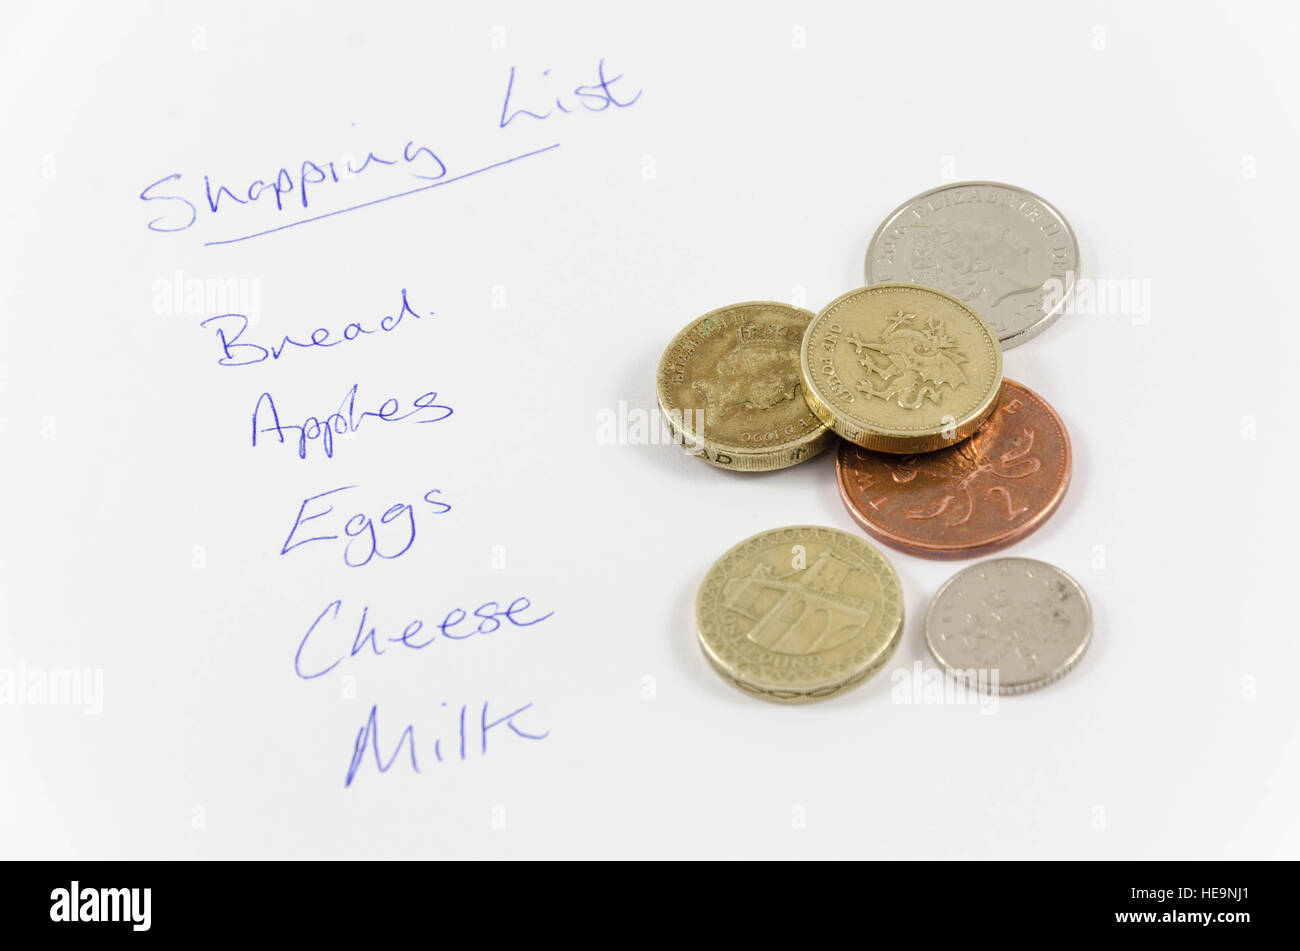 Eine Einkaufsliste und eine Handvoll Münzen zum bezahlen der Elemente in der Liste. Stockfoto